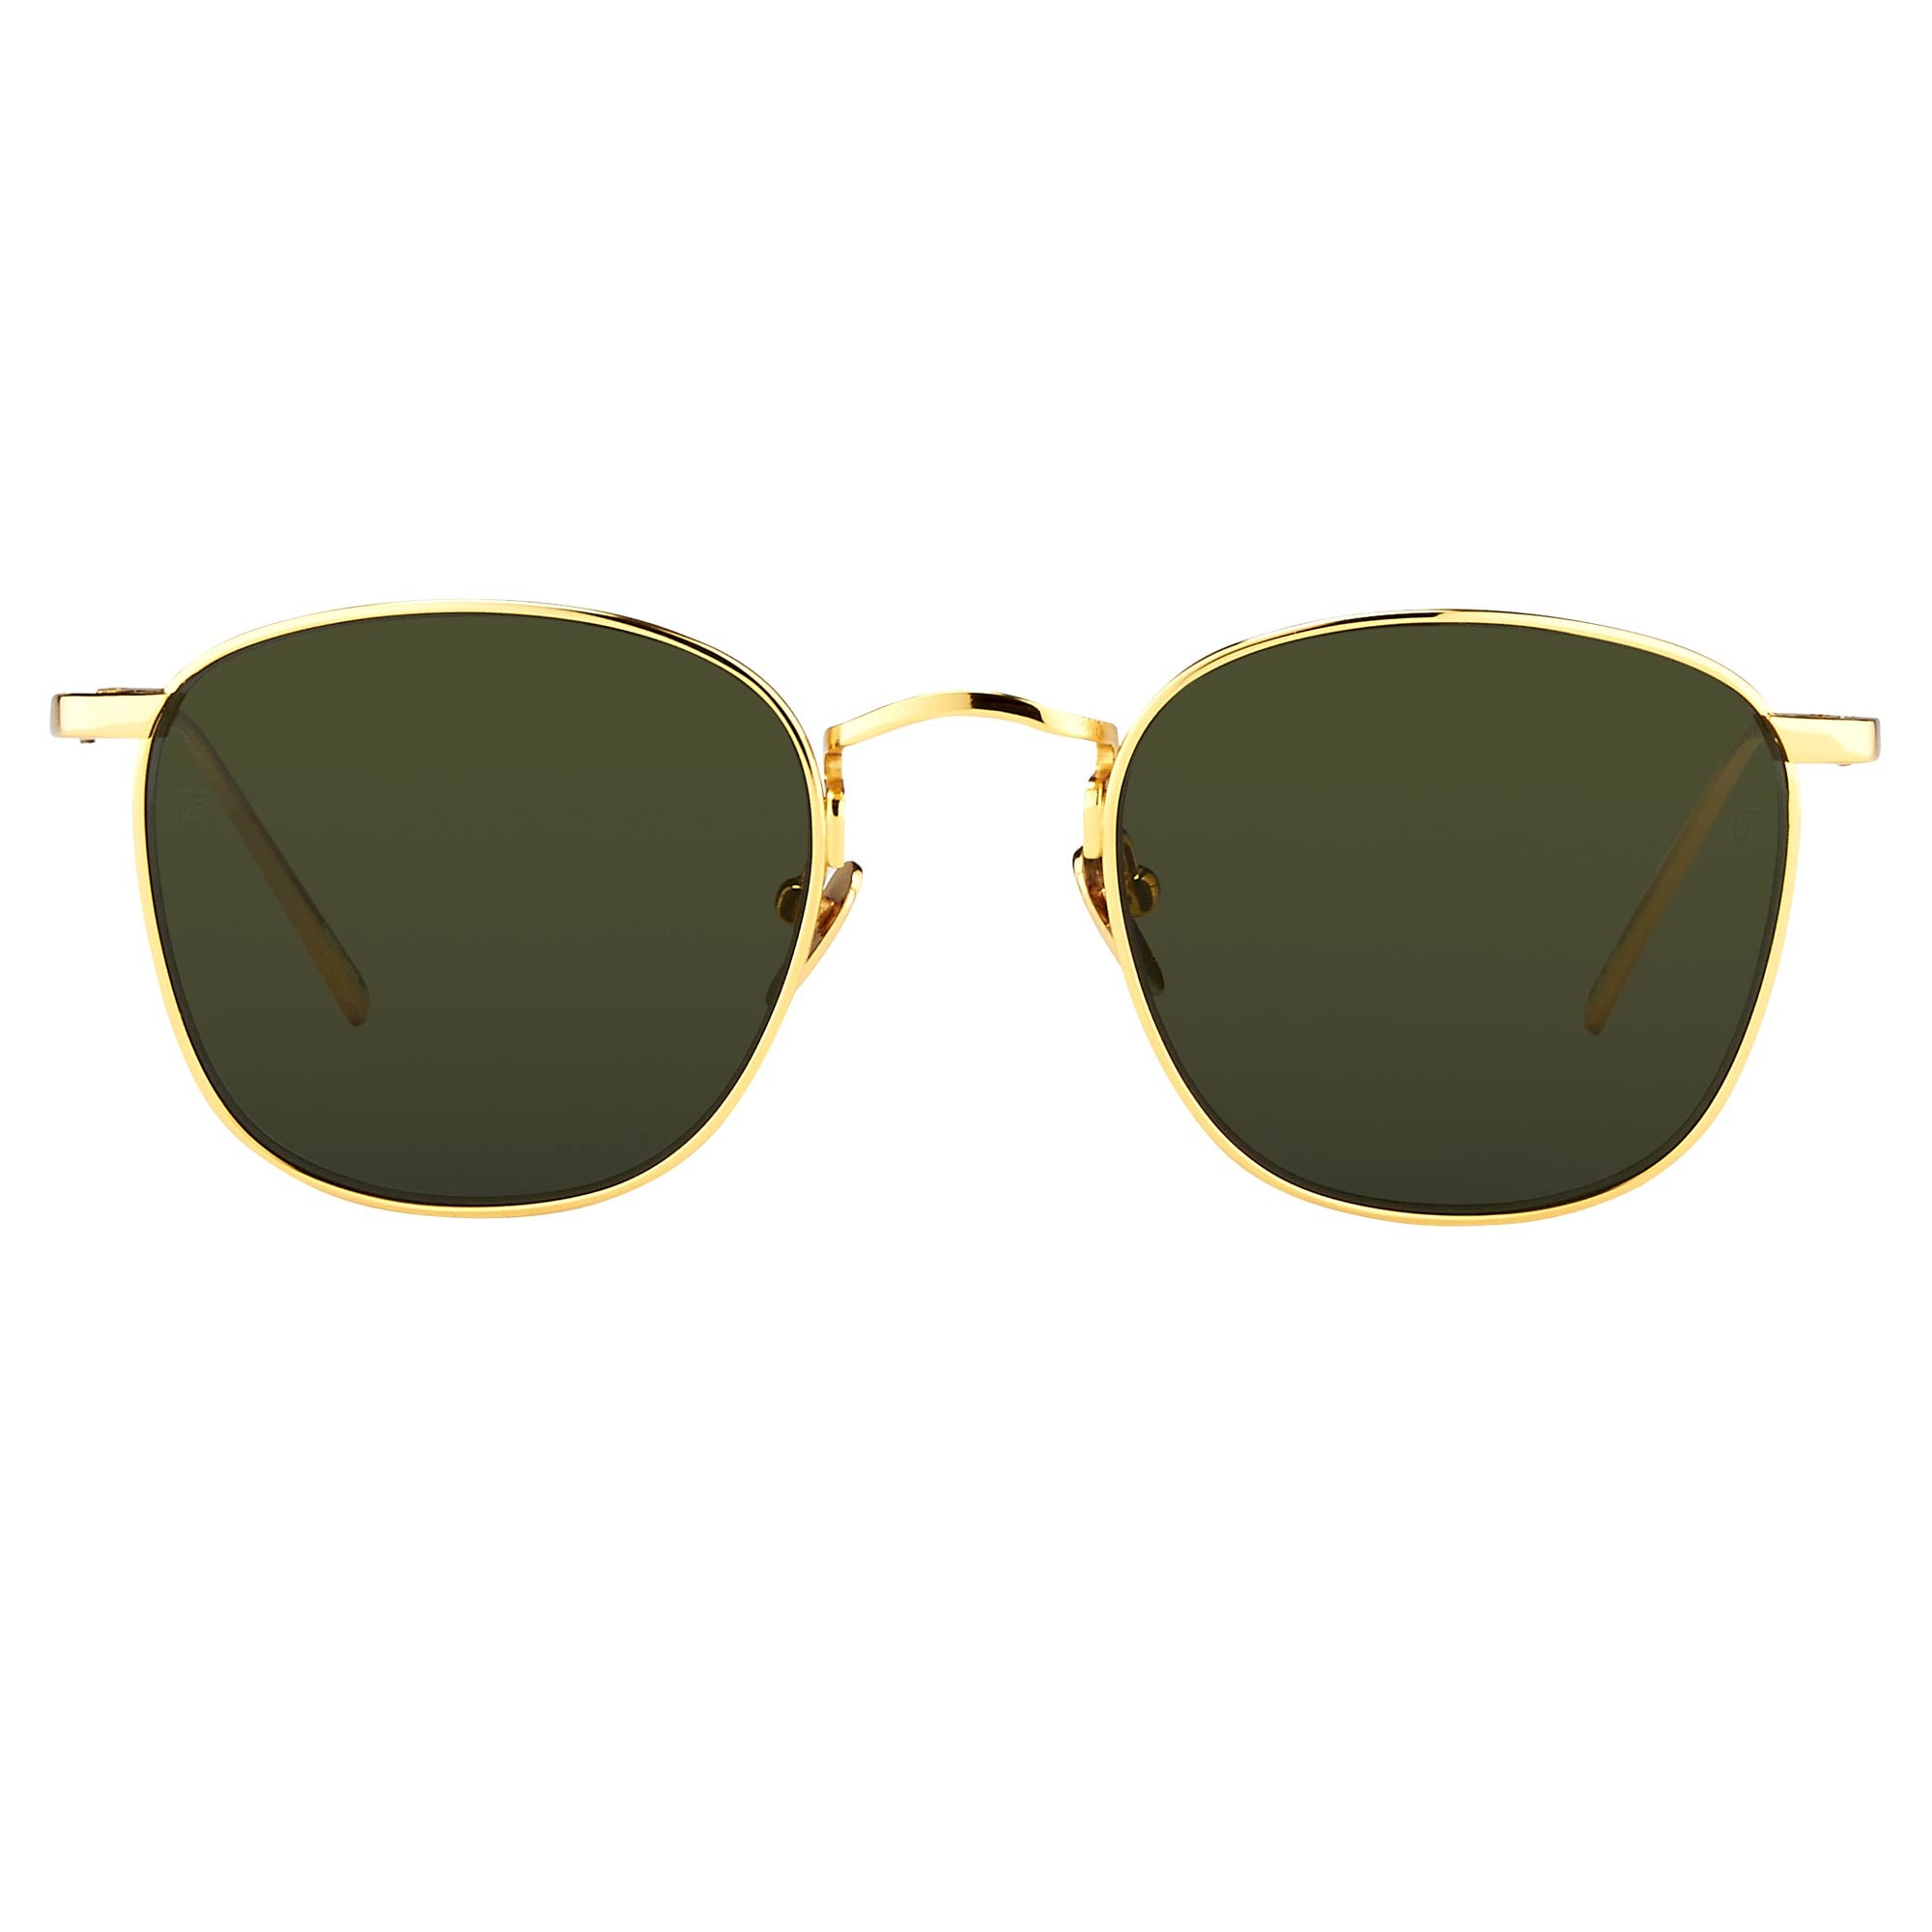 The Simon Men’s Square Sunglasses in Green / Yellow Gold (C5)